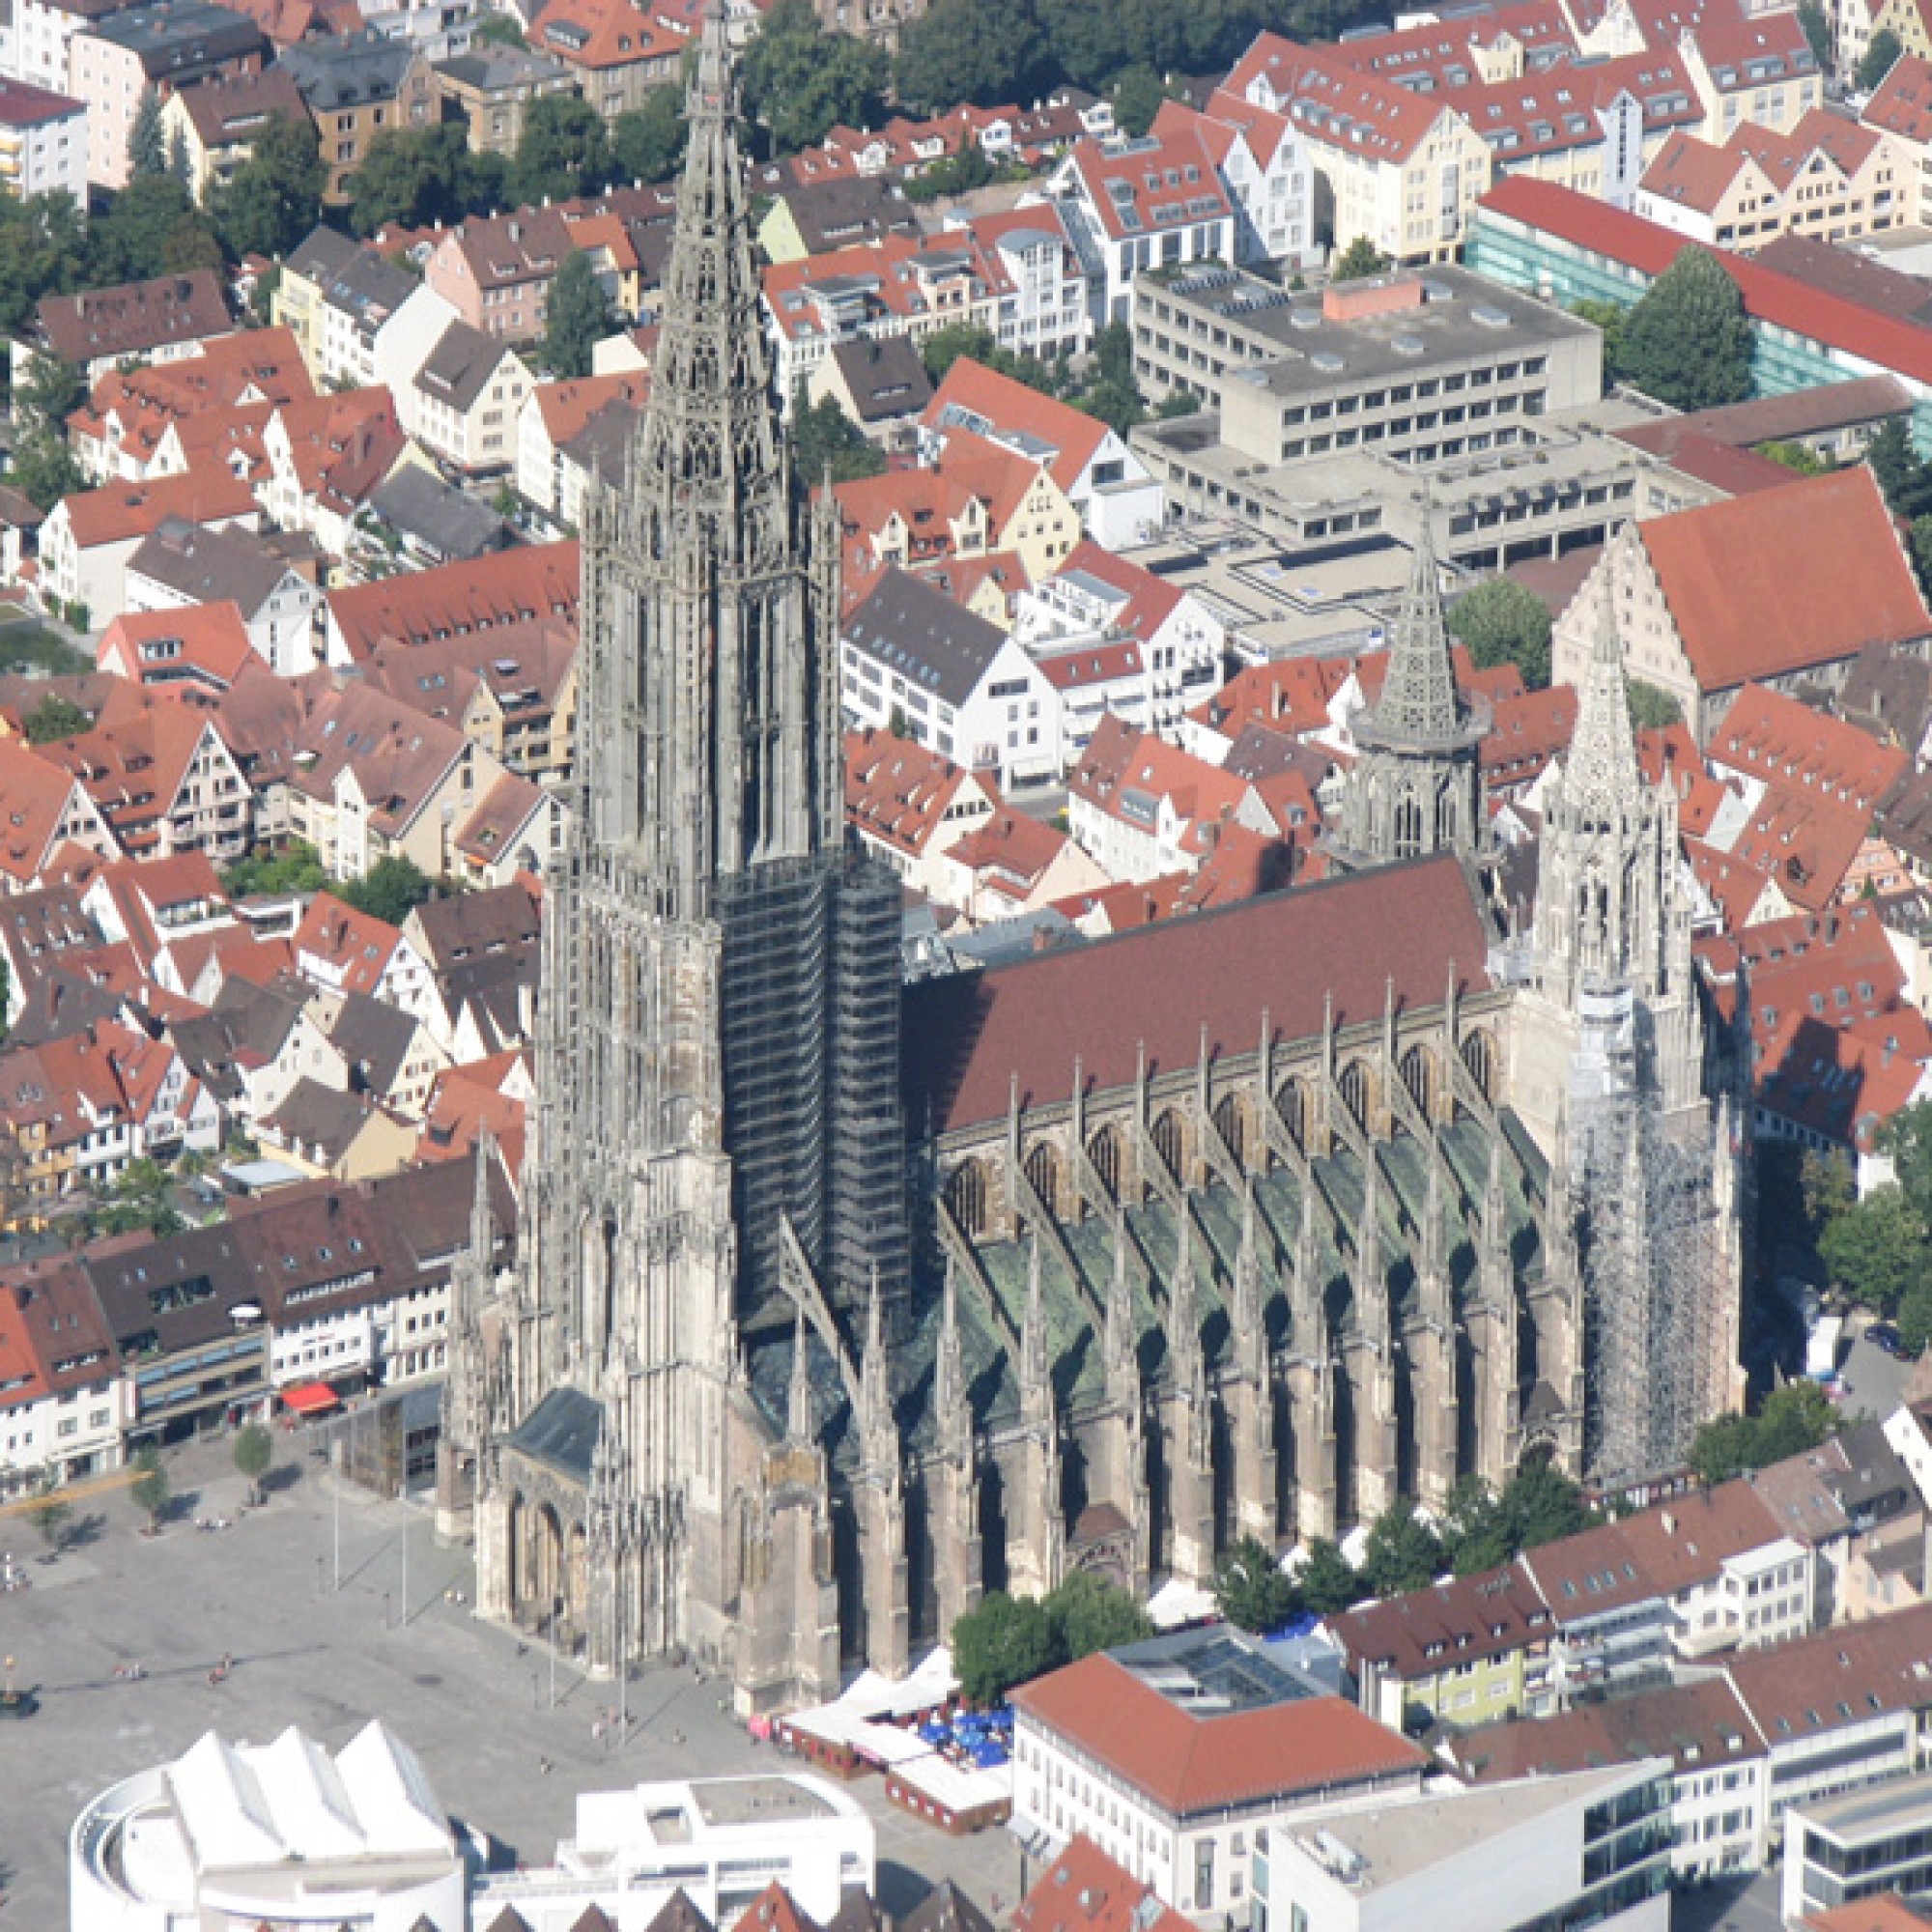 Ulmer Münster aus der Luft (wikimedia.org, Seematze, CC)